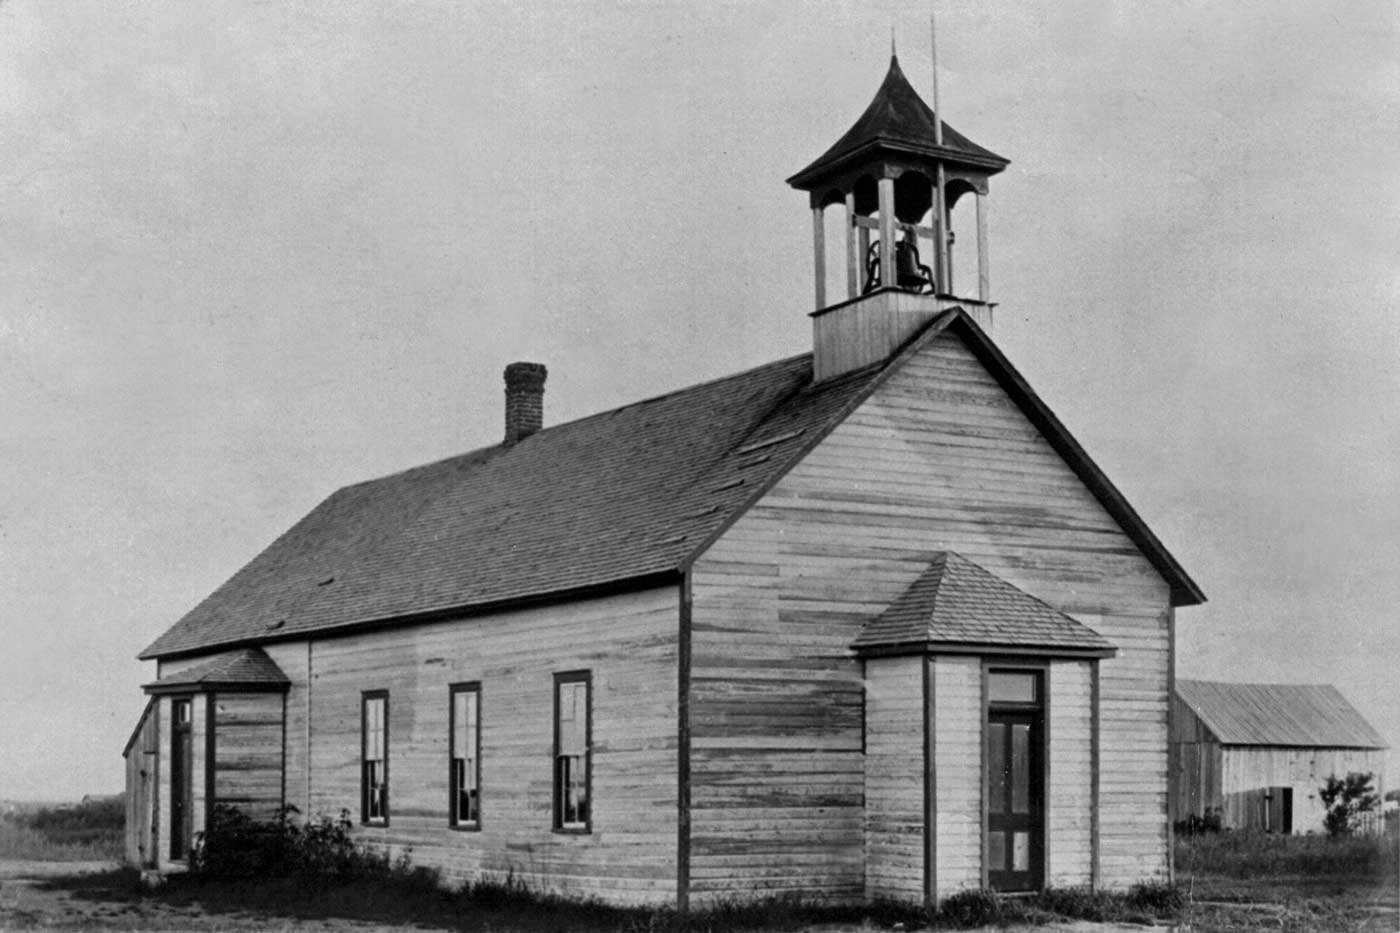 1889 territorial schoolhouse